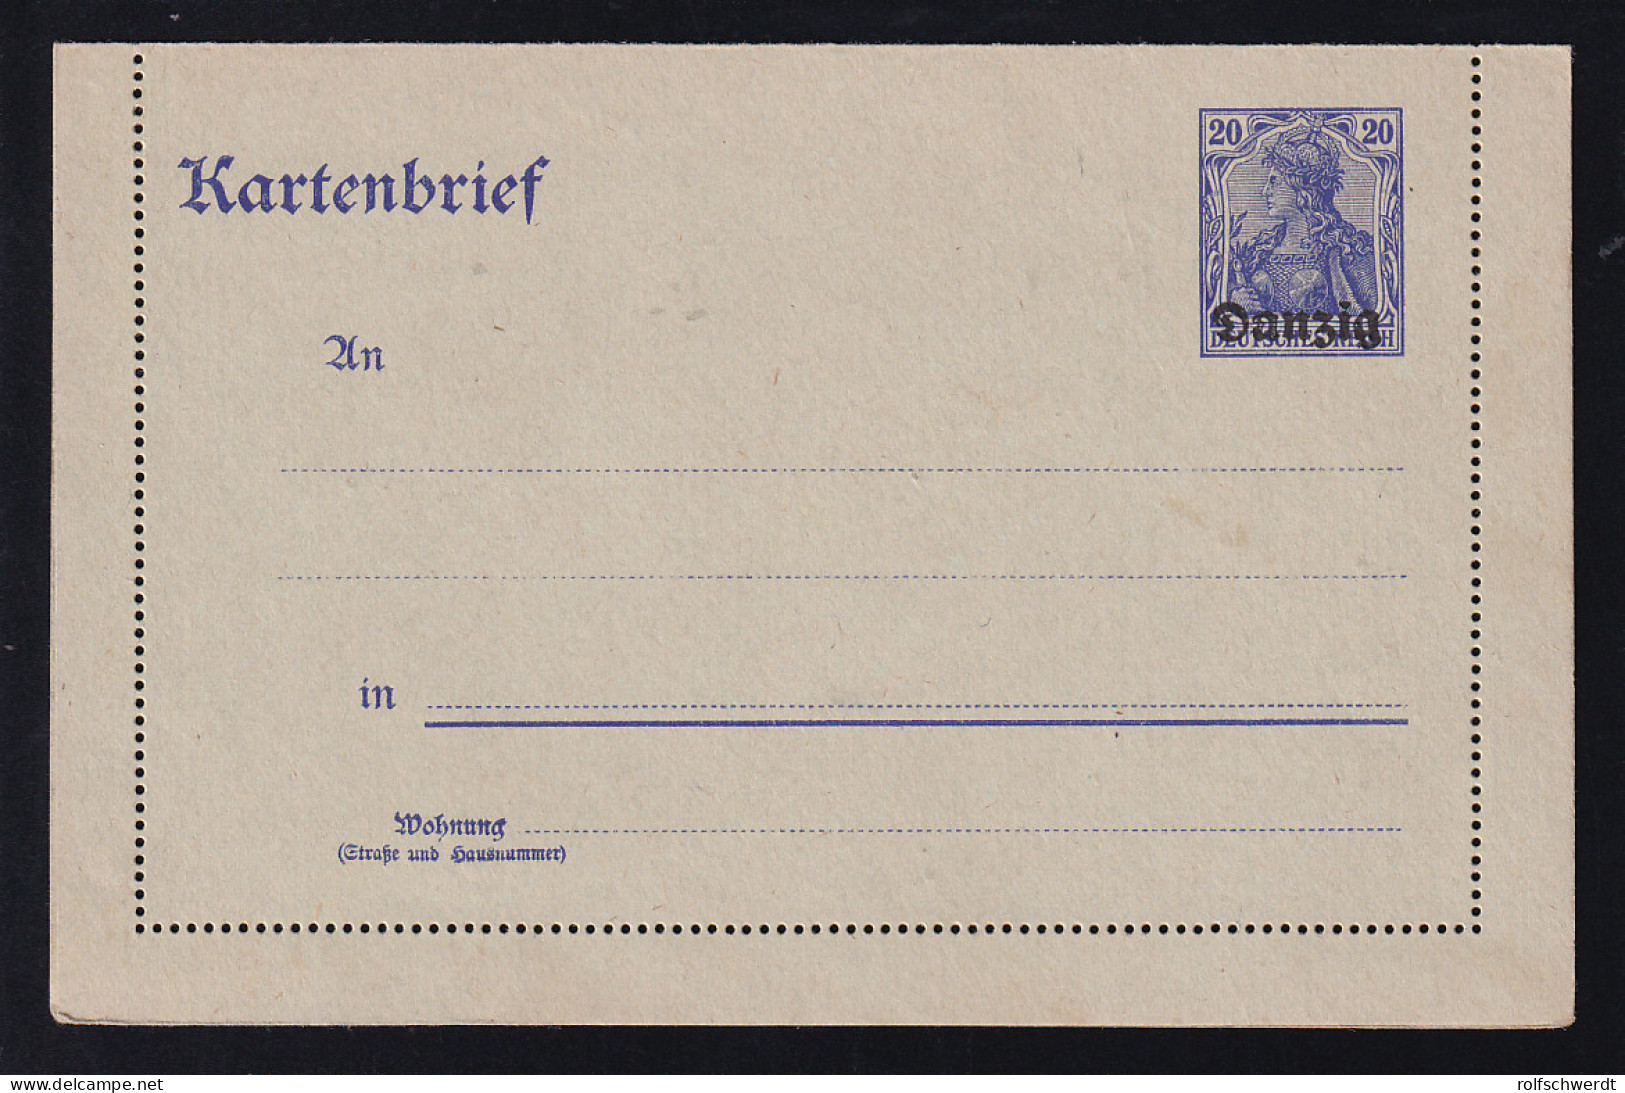 Kartenbrief Germania 20 Pfg., (*) - Ganzsachen